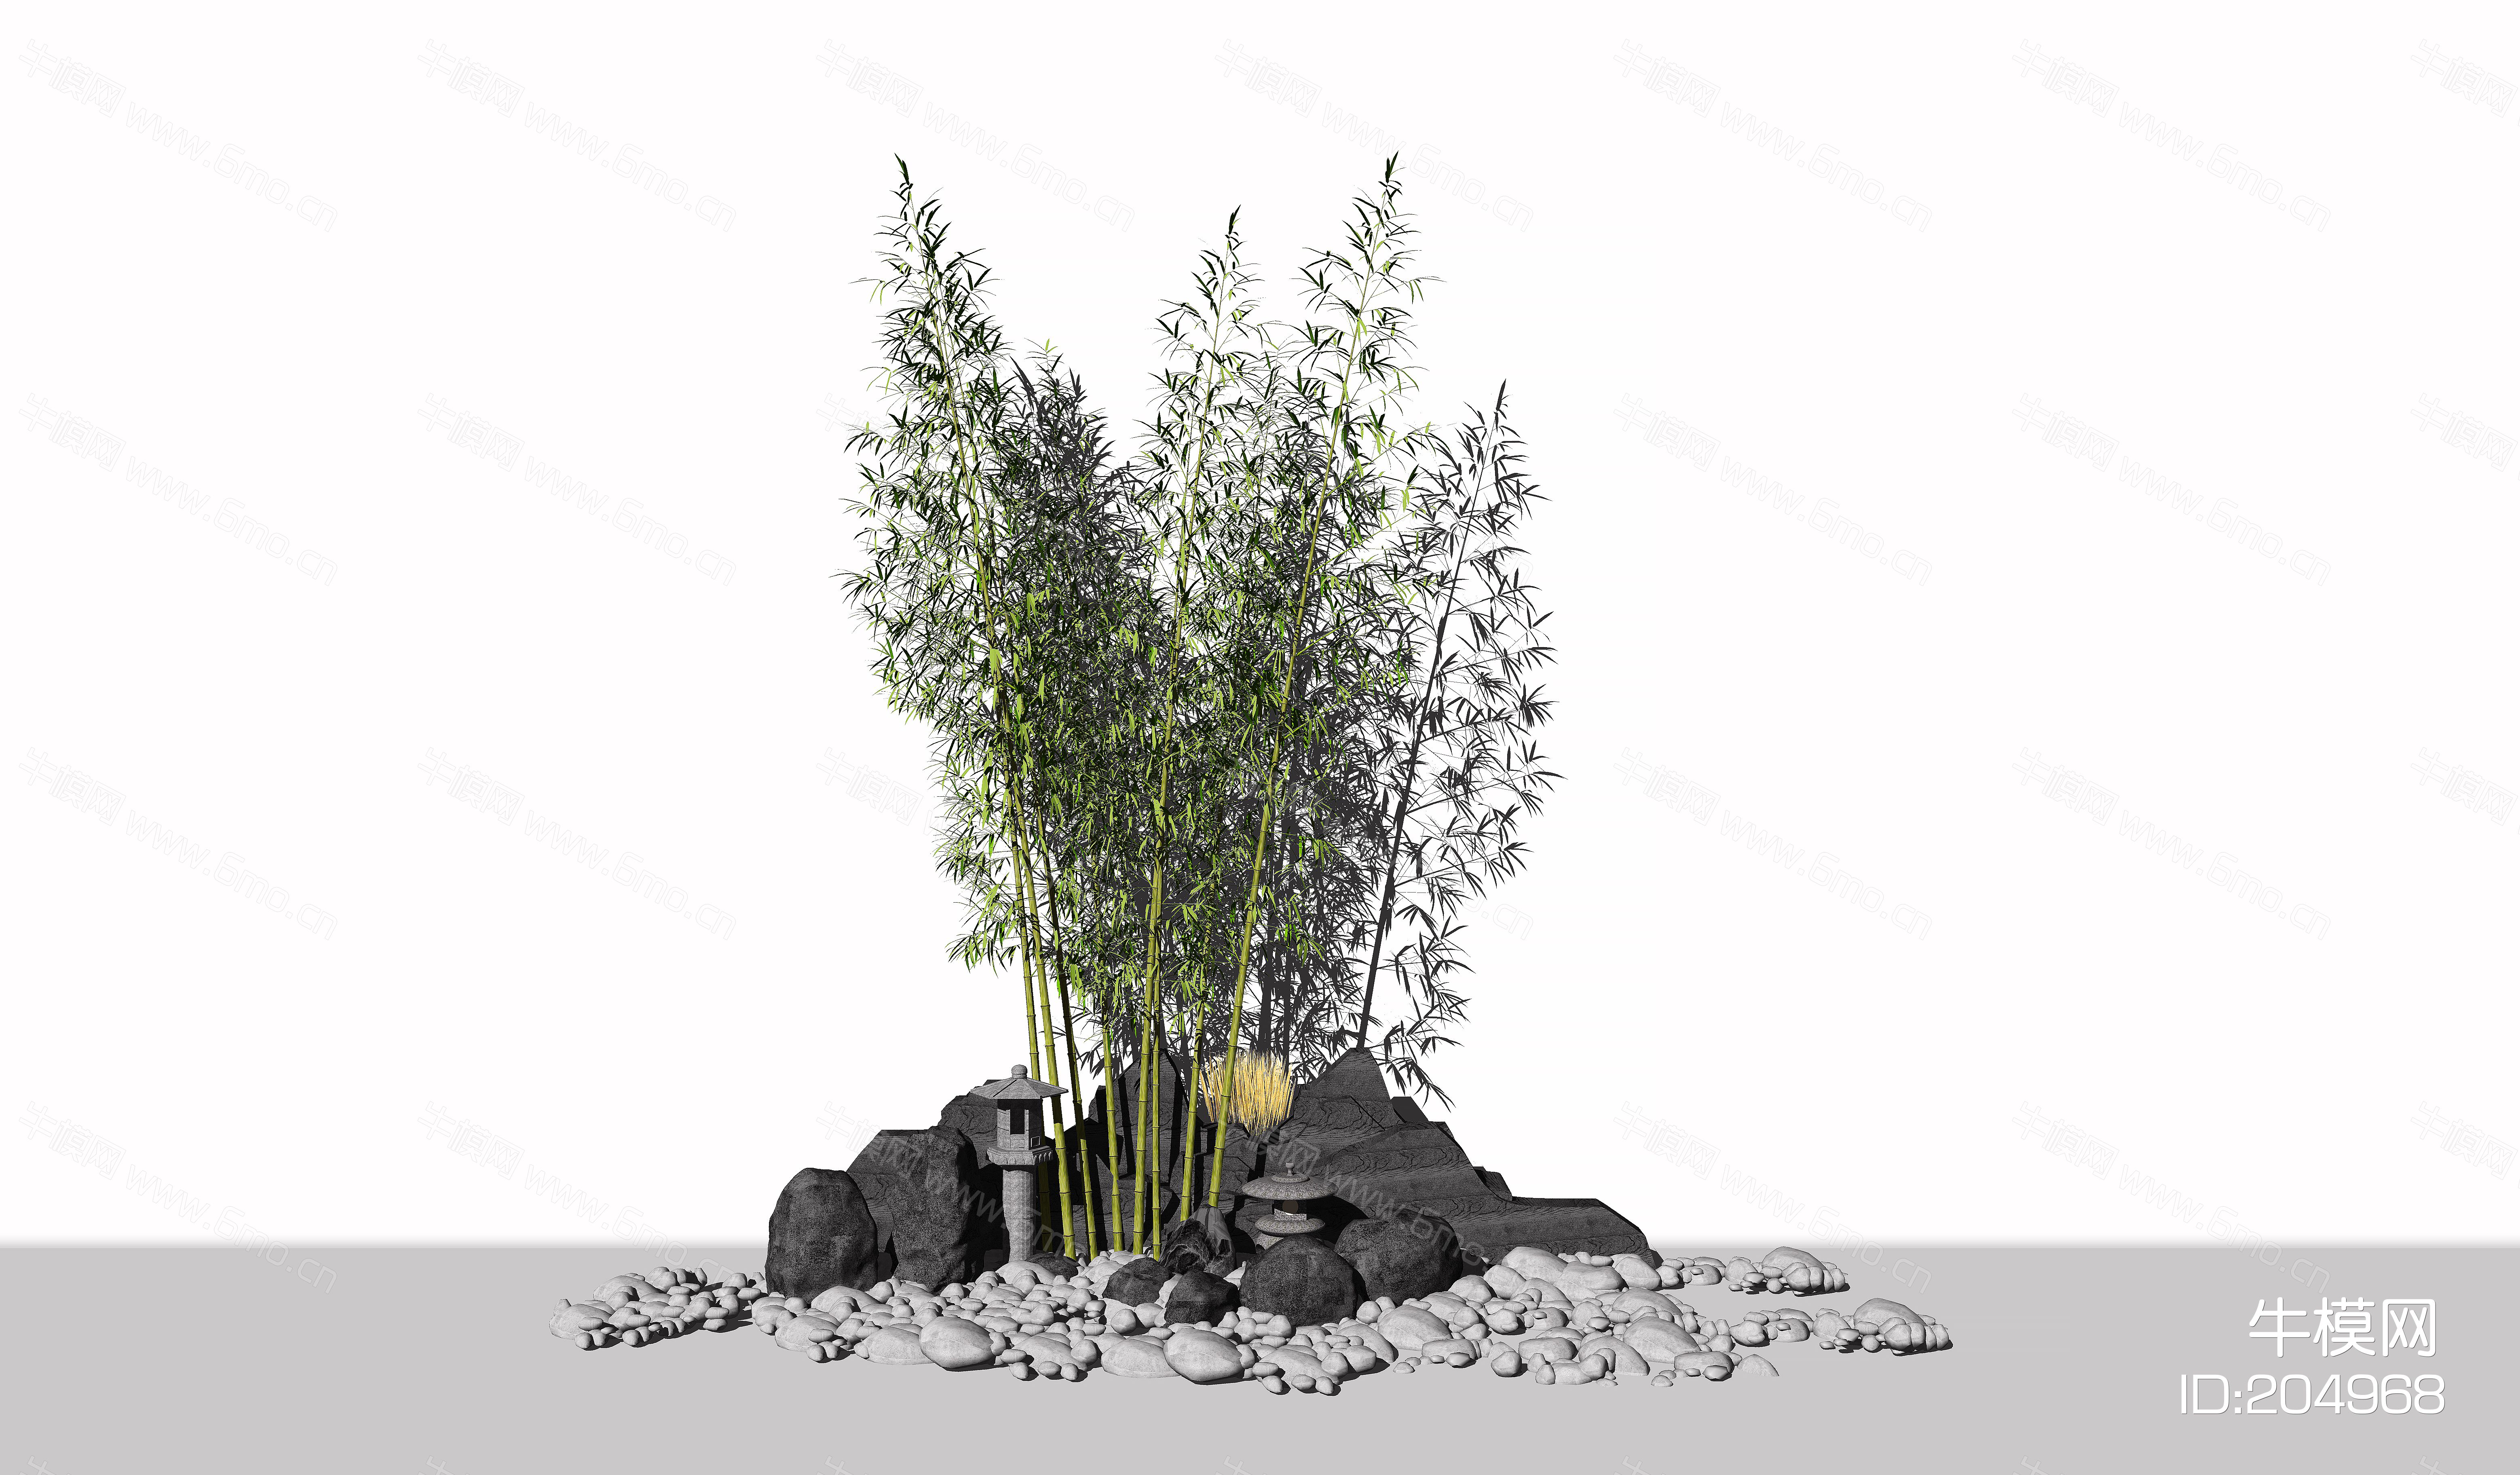 中式庭院小品 花草樹木 假山石頭 竹子枯山水 植物 禪意景觀